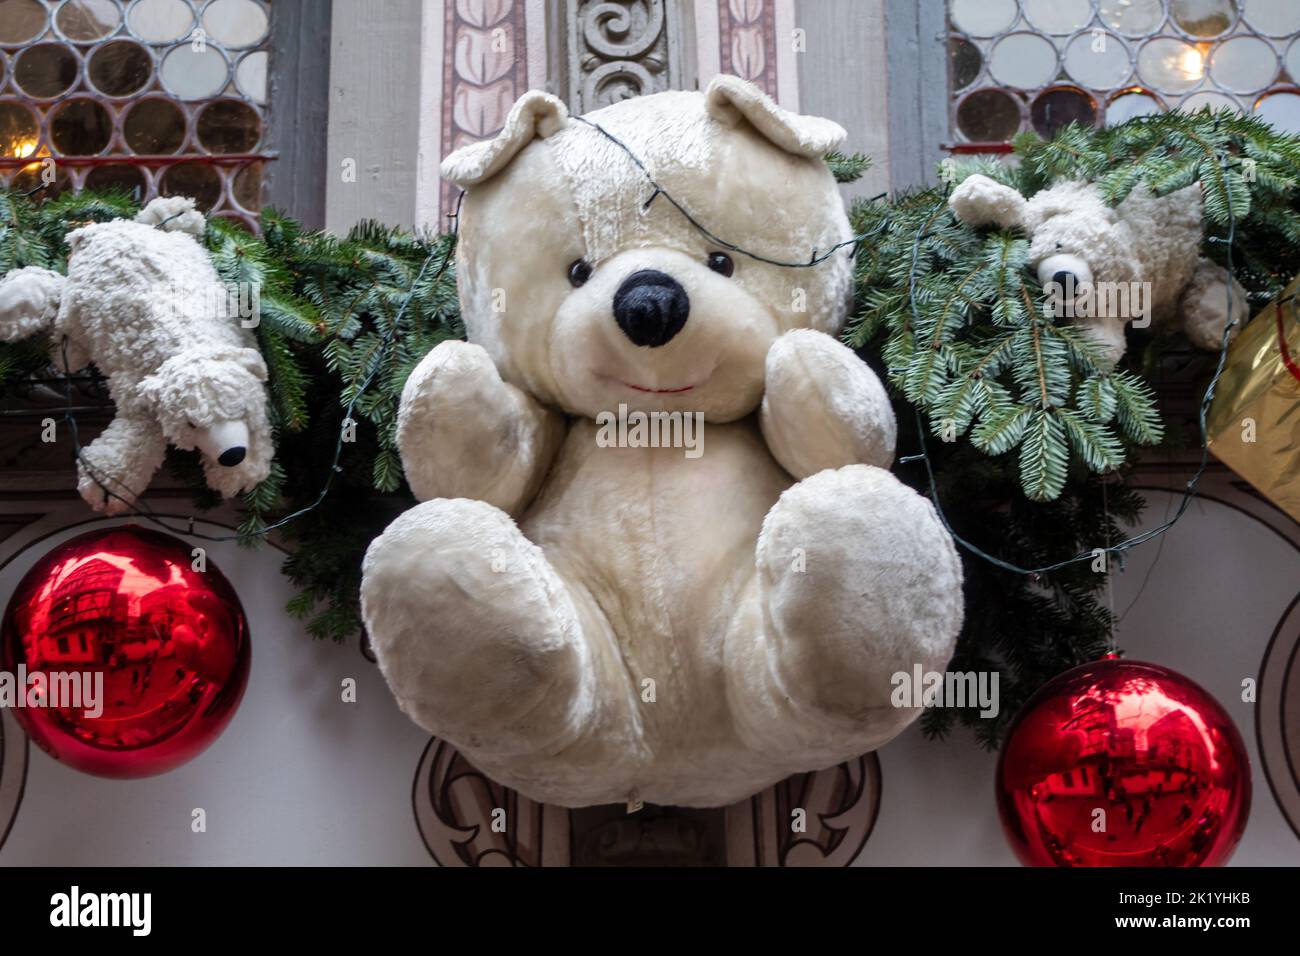 Ours en peluche et décorations de Noël sur le mur, mise au point sélective, effet de bruit Banque D'Images